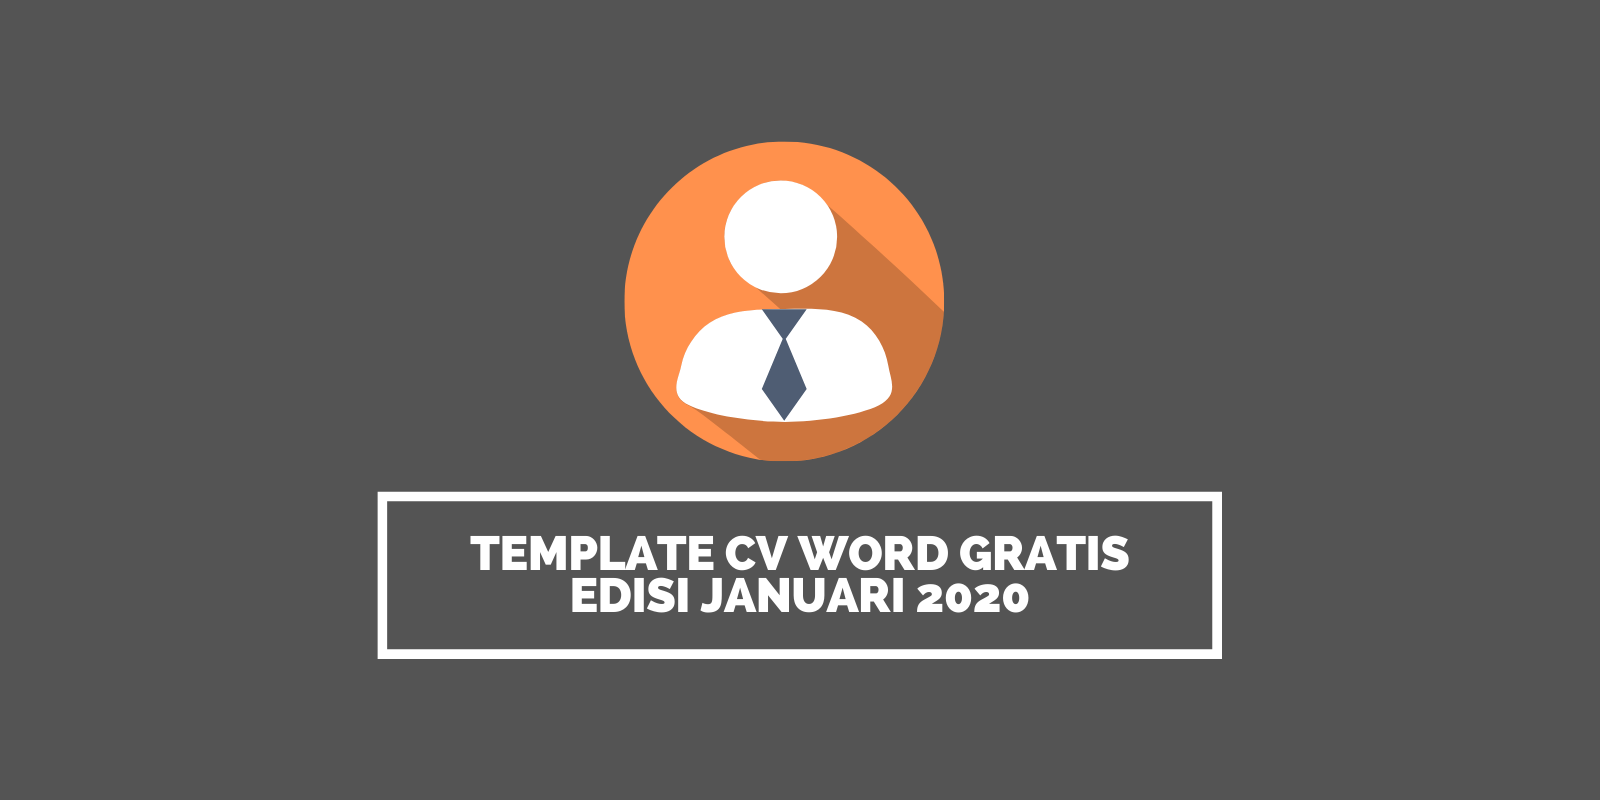 Template CV Word Gratis Edisi Januari 2020